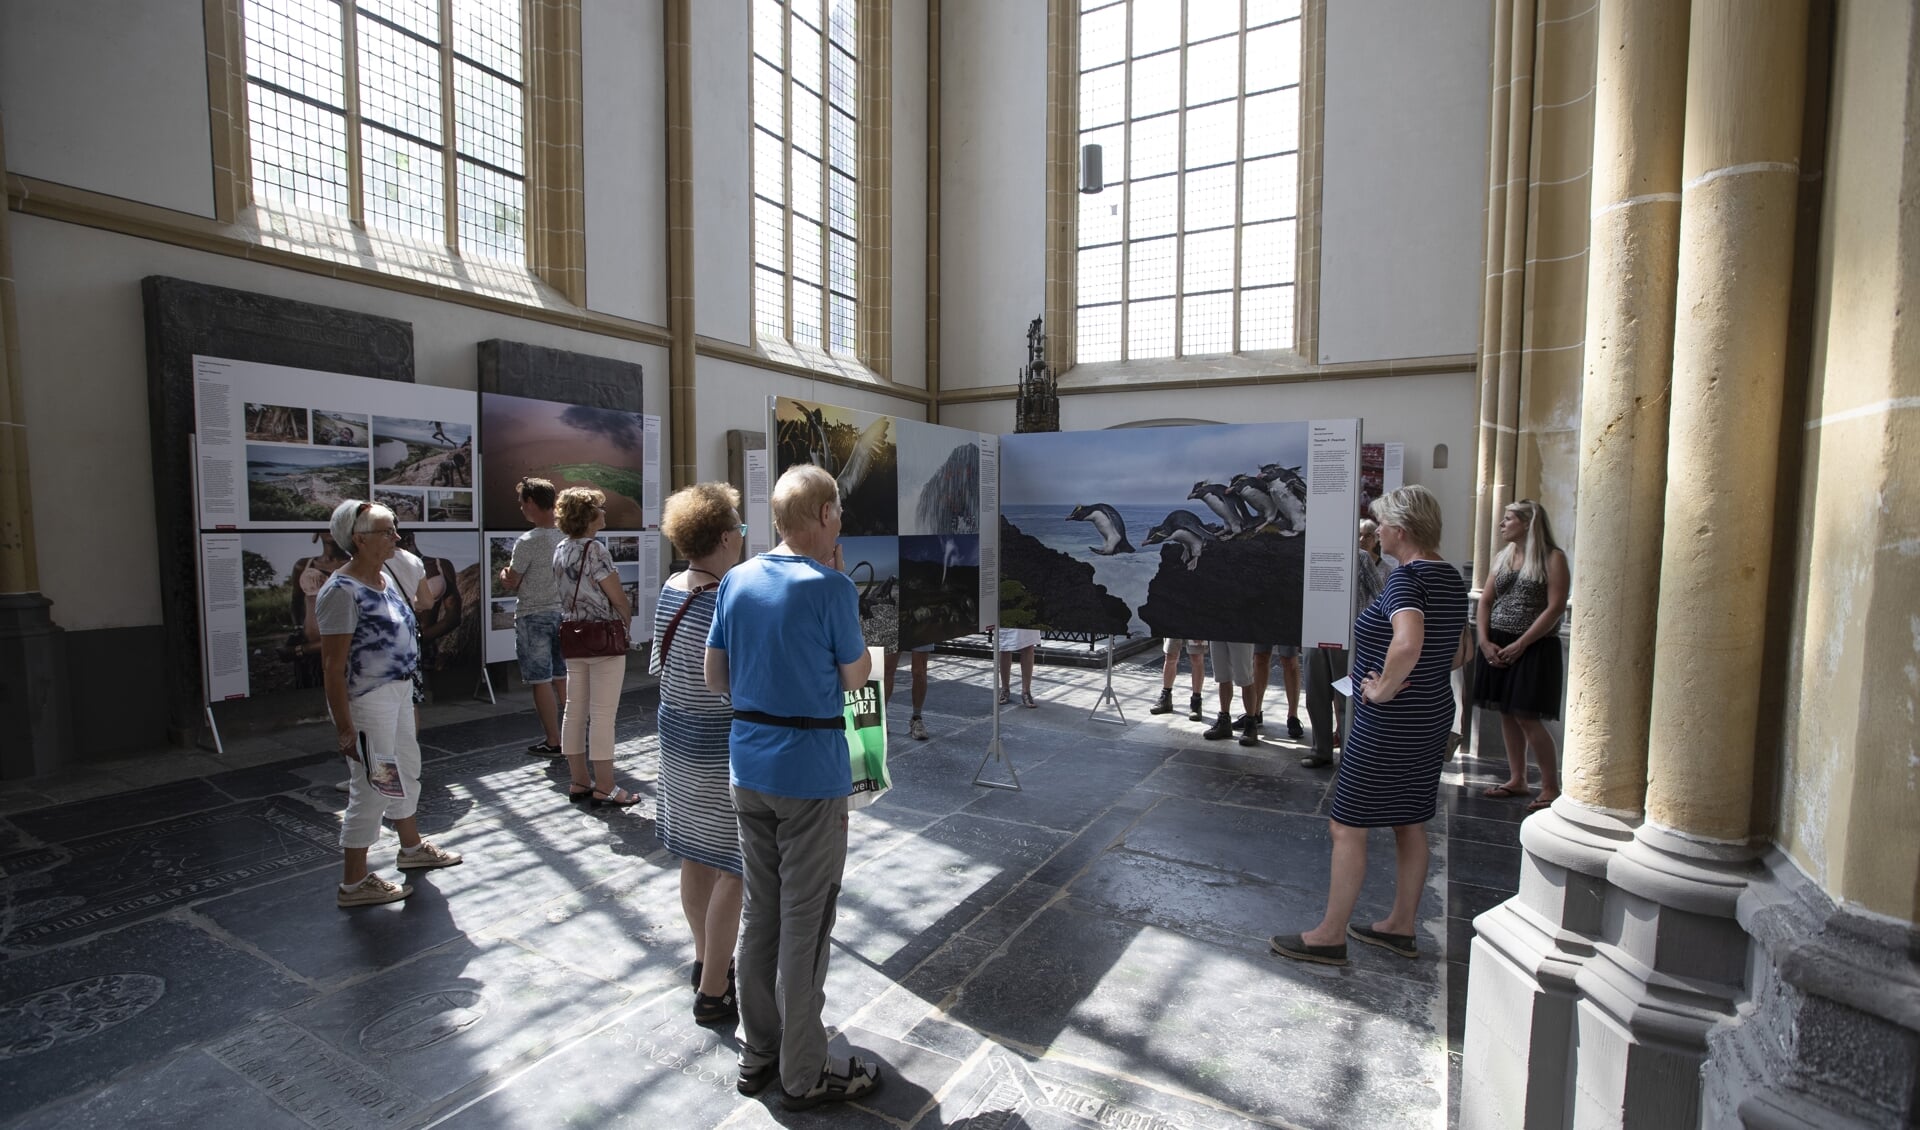 Bezoekers in de World Press Photo tentoonstelling in de Walburgiskerk.